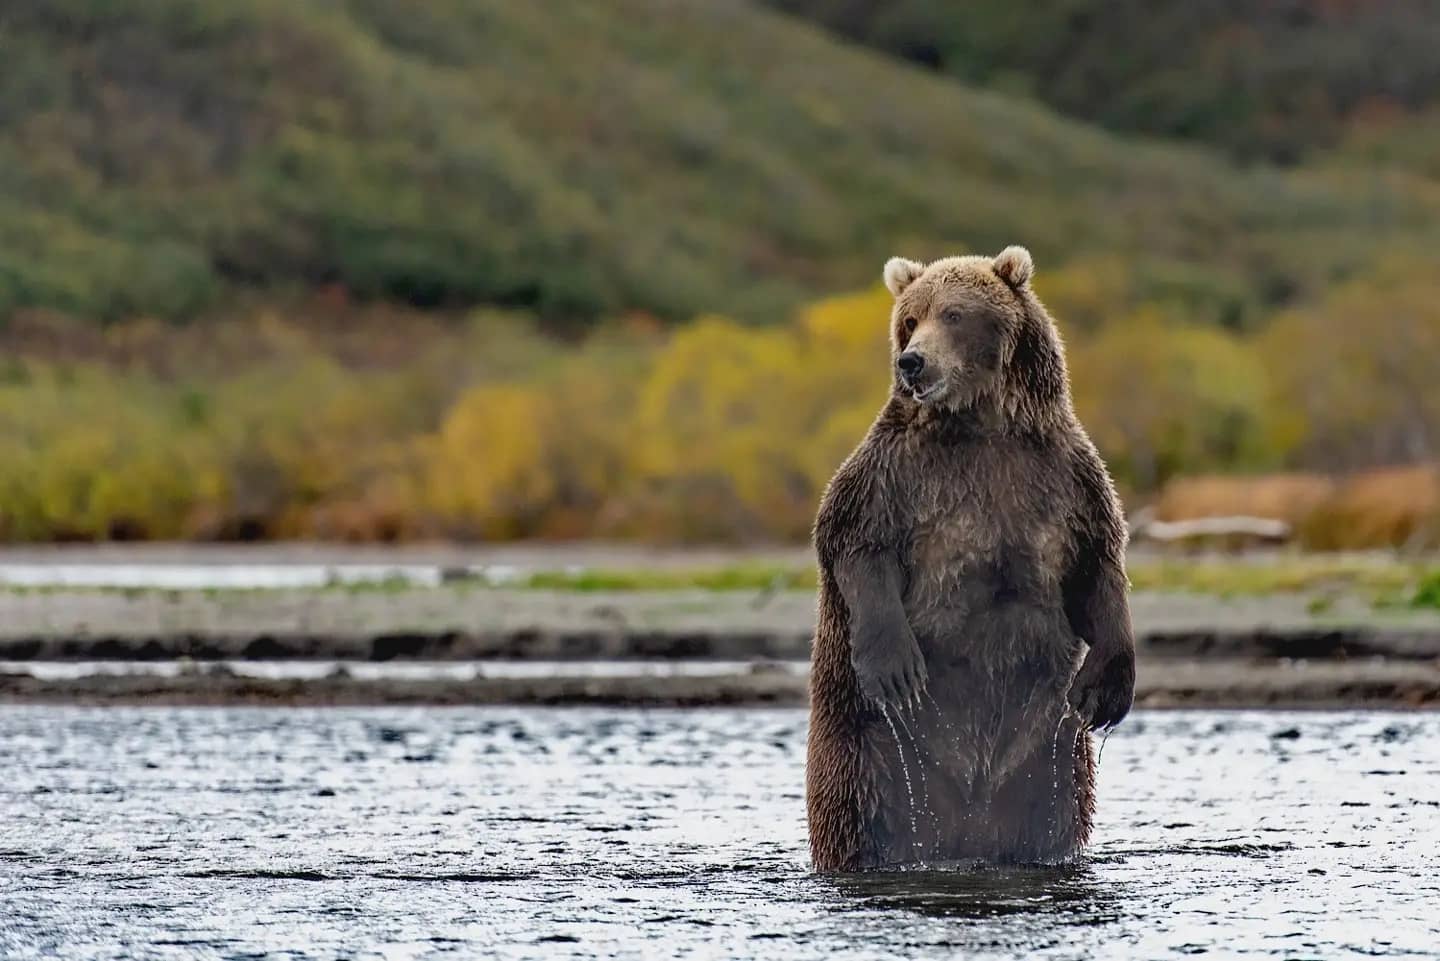 Массу тела бурых медведей, обитающих в дикой природе, определят на Камчатке